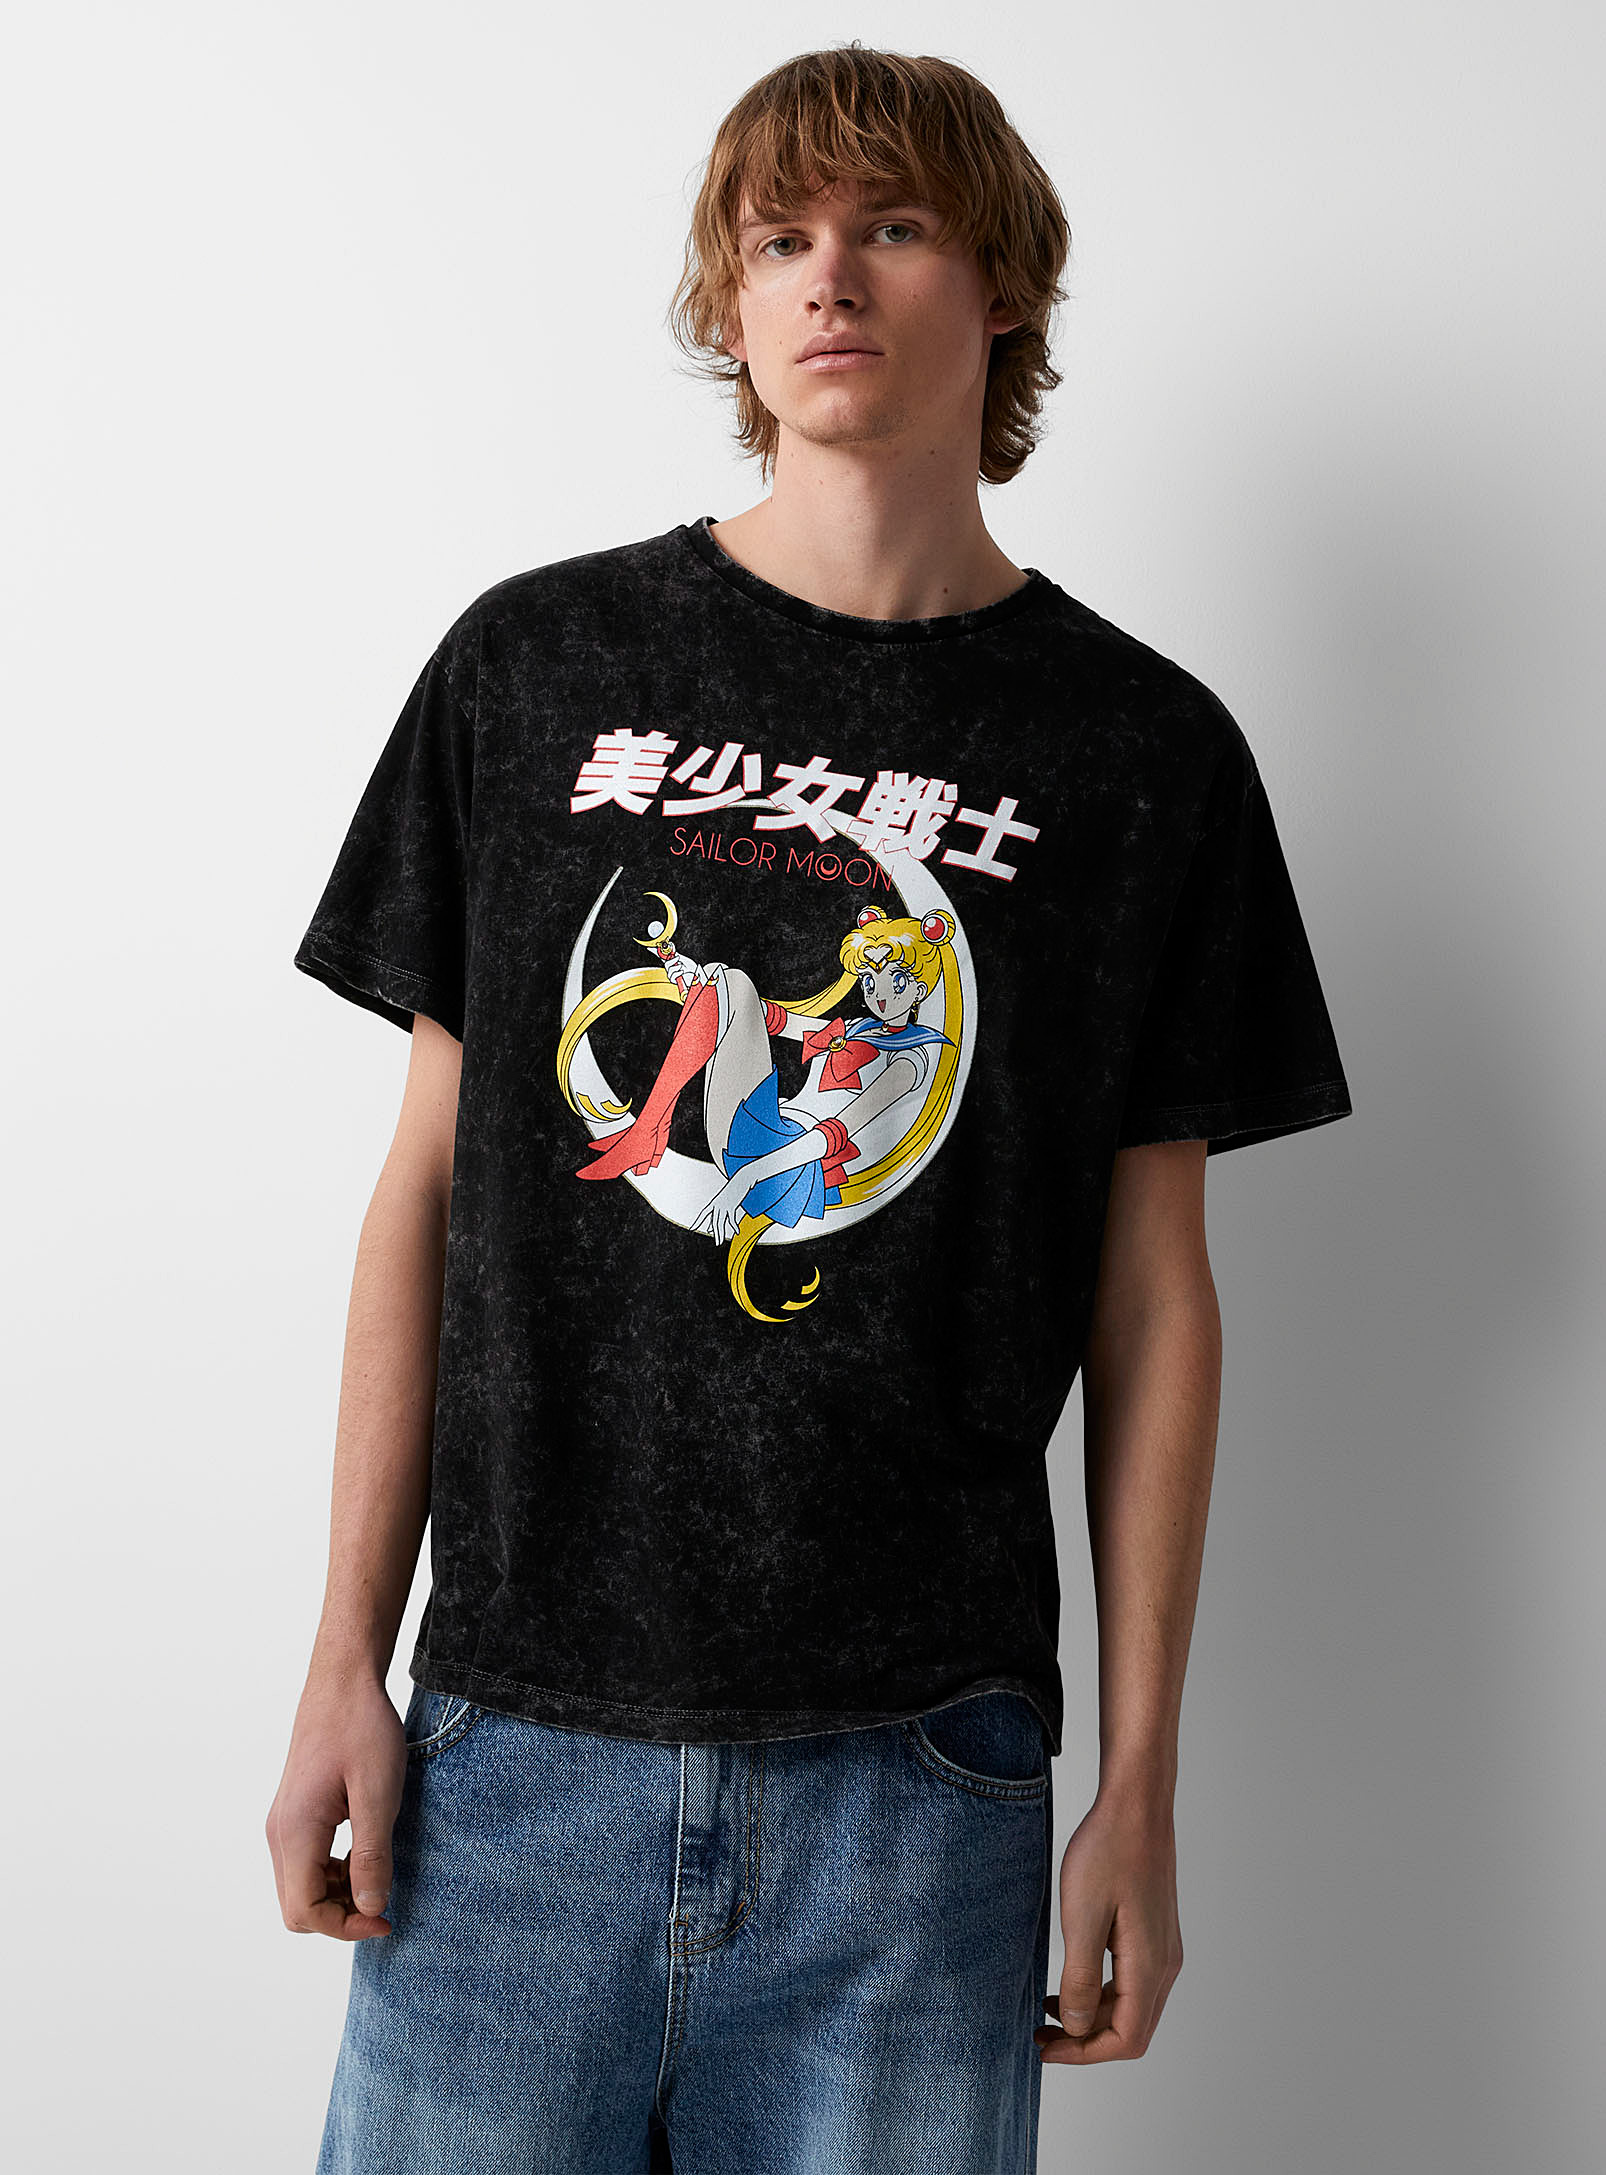 Djab - Men's Sailor Moon faded T-shirt